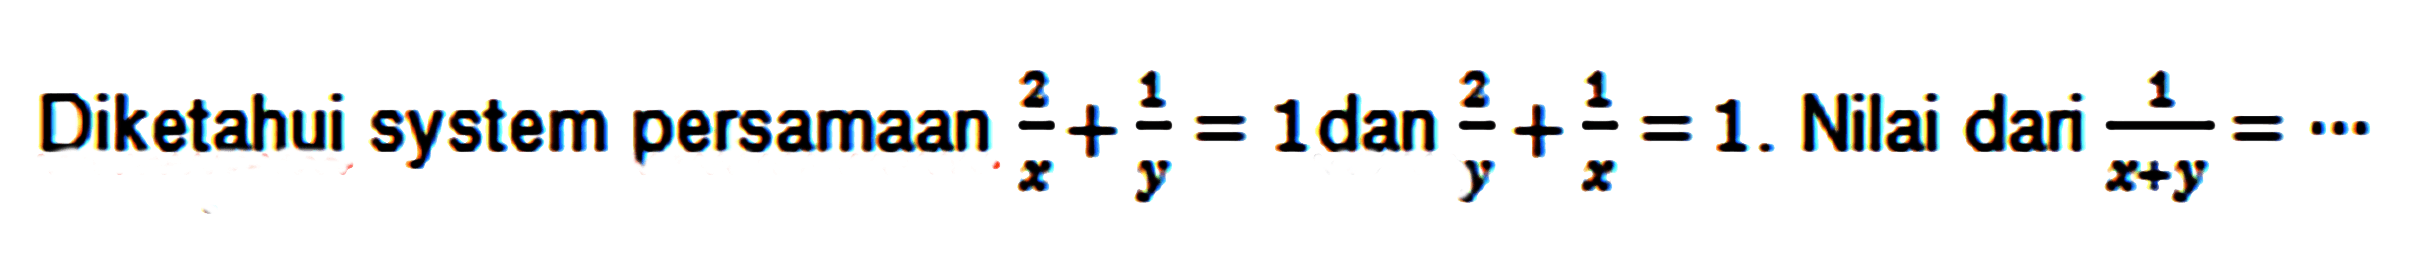 Diketahui system persamaan 2/x + 1/y = 1 dan 2/y + 1/x = 1. Nilai dari 1/(x+y)=